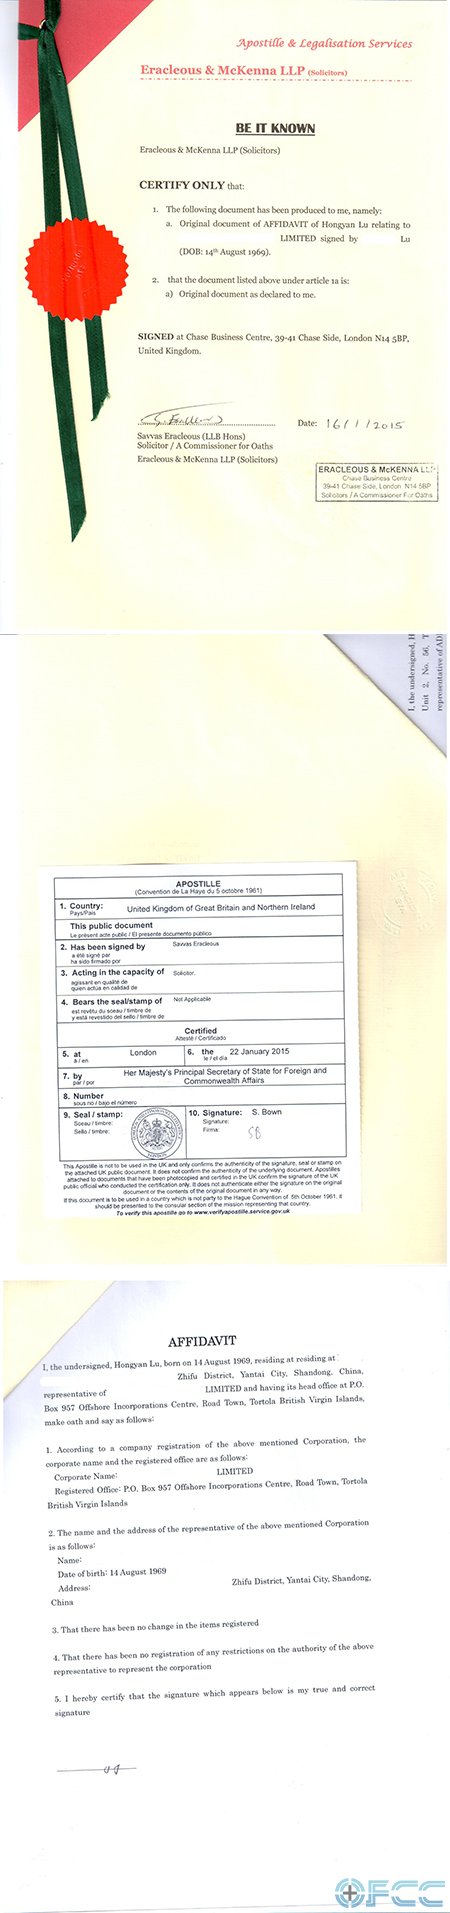 BVI公司文件海牙认证模板